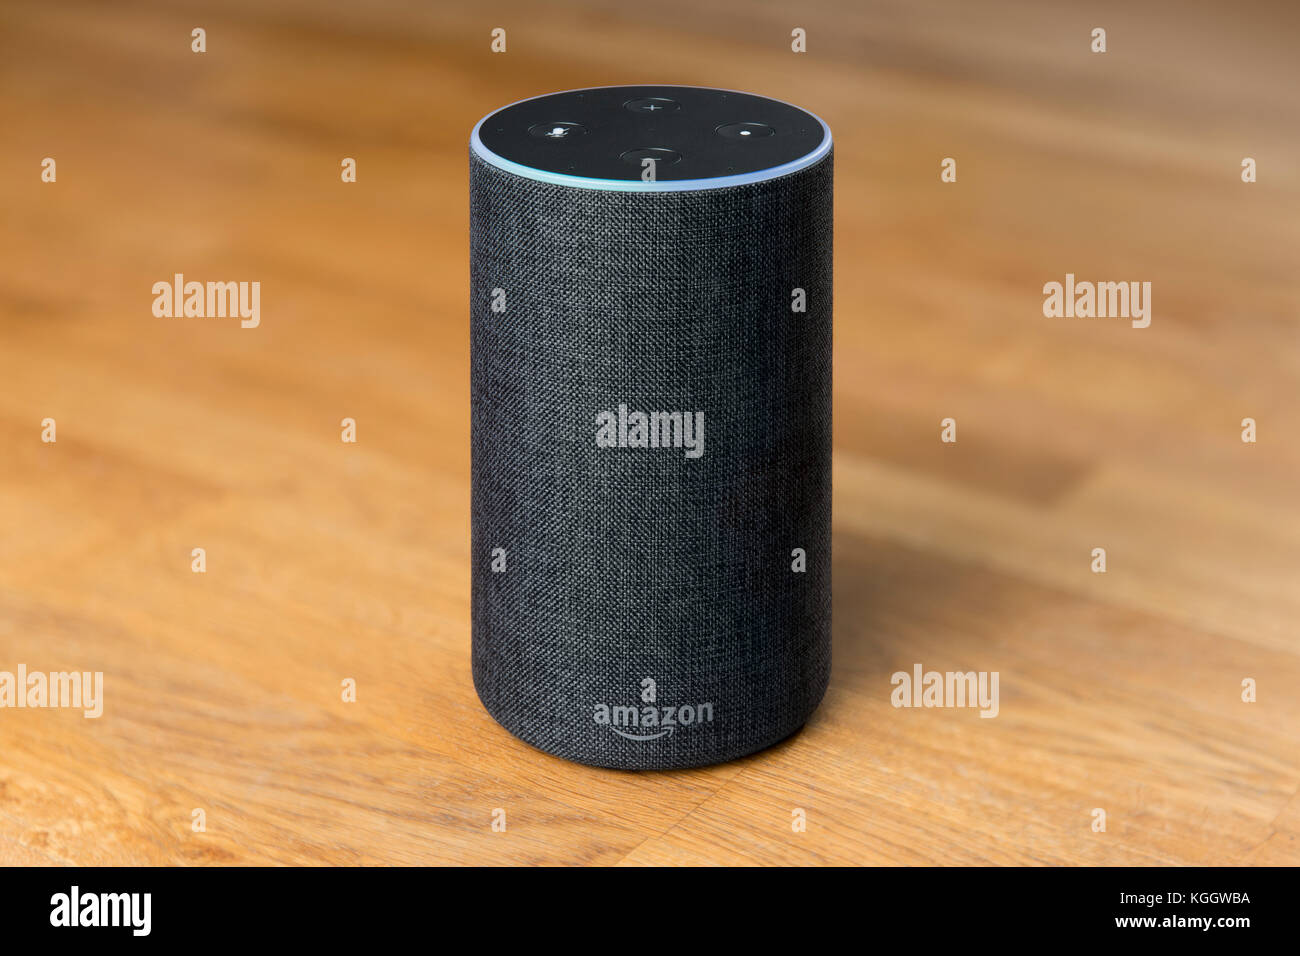 Il 2017 Rilascio di un carbone Amazon eco (di seconda generazione) smart speaker e intelligente assistente personale Alexa sparato contro un sfondo di legno Foto Stock